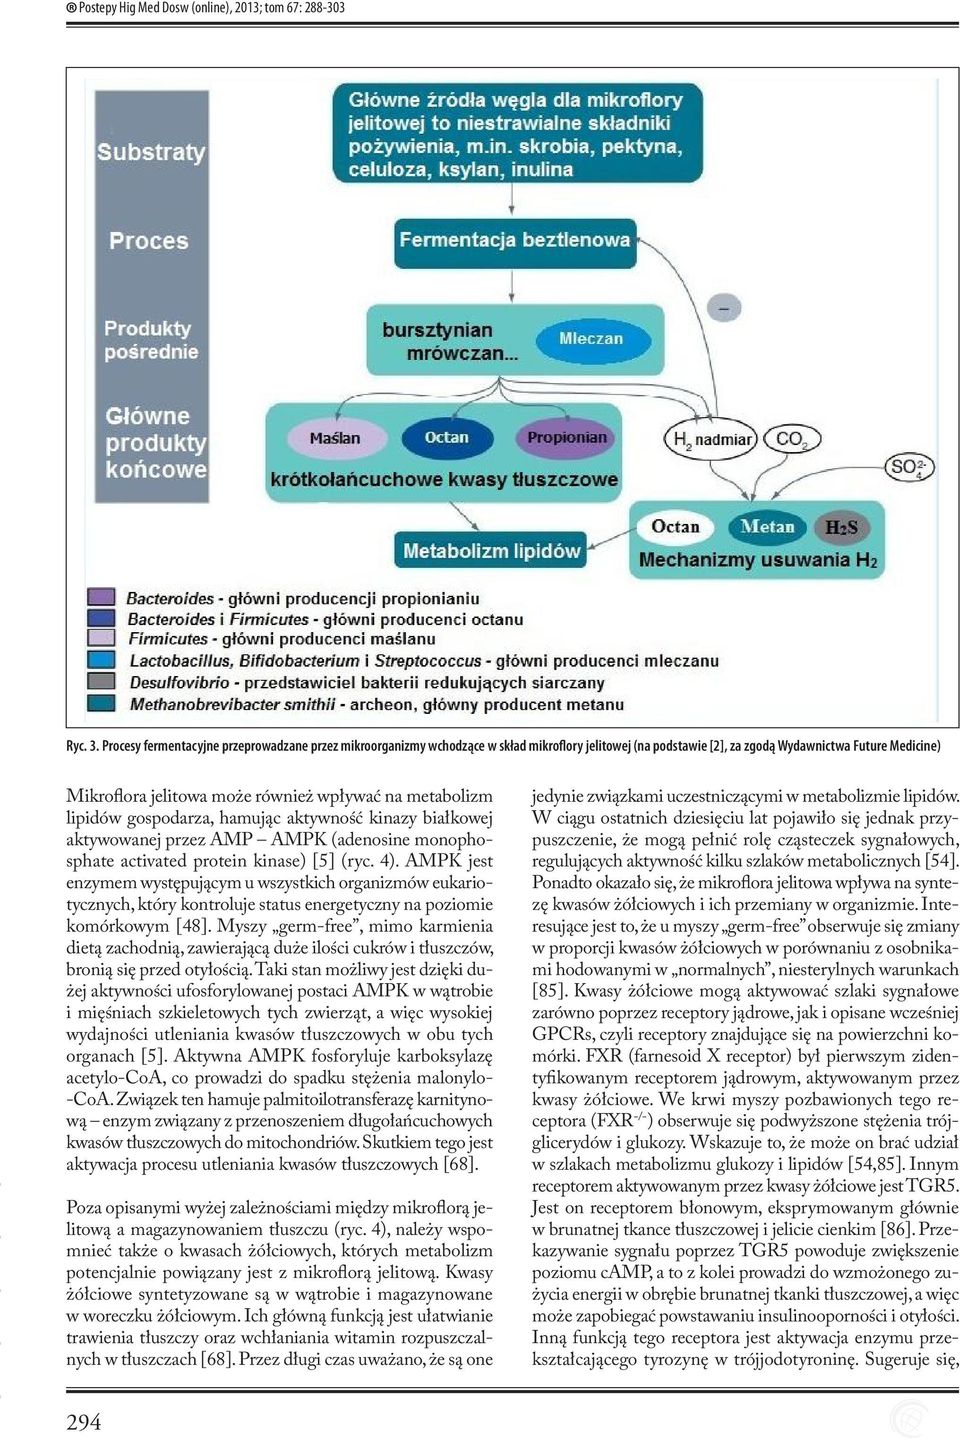 metabolizm lipidów gospodarza, hamując aktywność kinazy białkowej aktywowanej przez AMP AMPK (adenosine monophosphate activated protein kinase) [5] (ryc. 4).